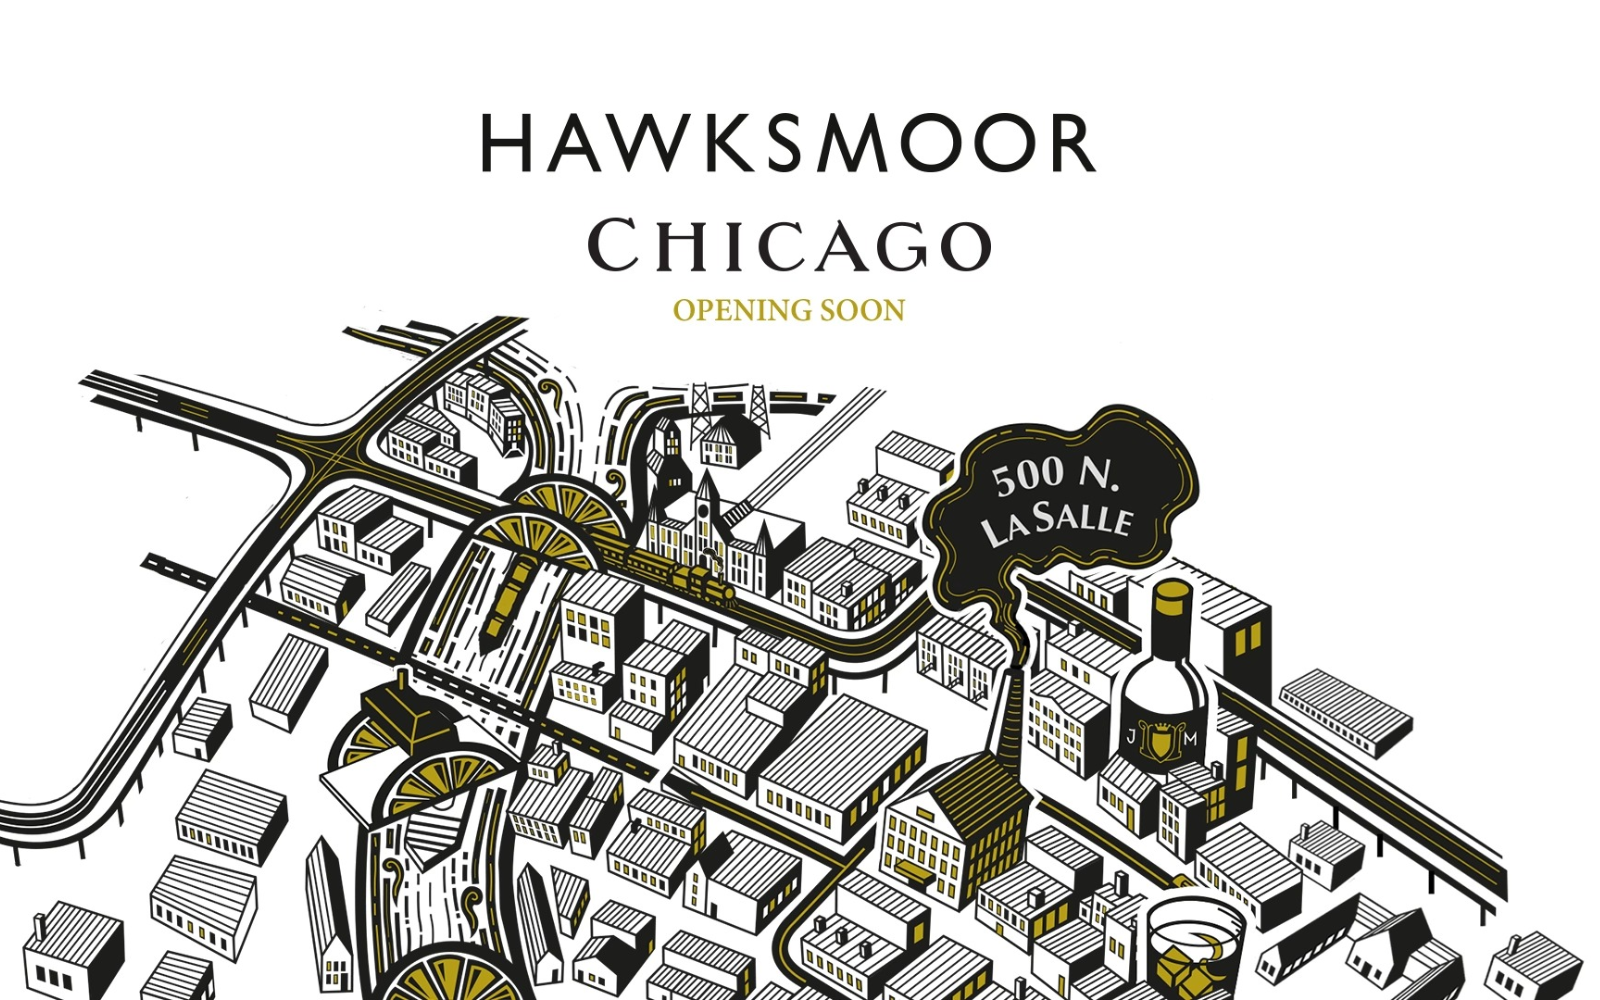 Hawksmoor Chicago menu cover design